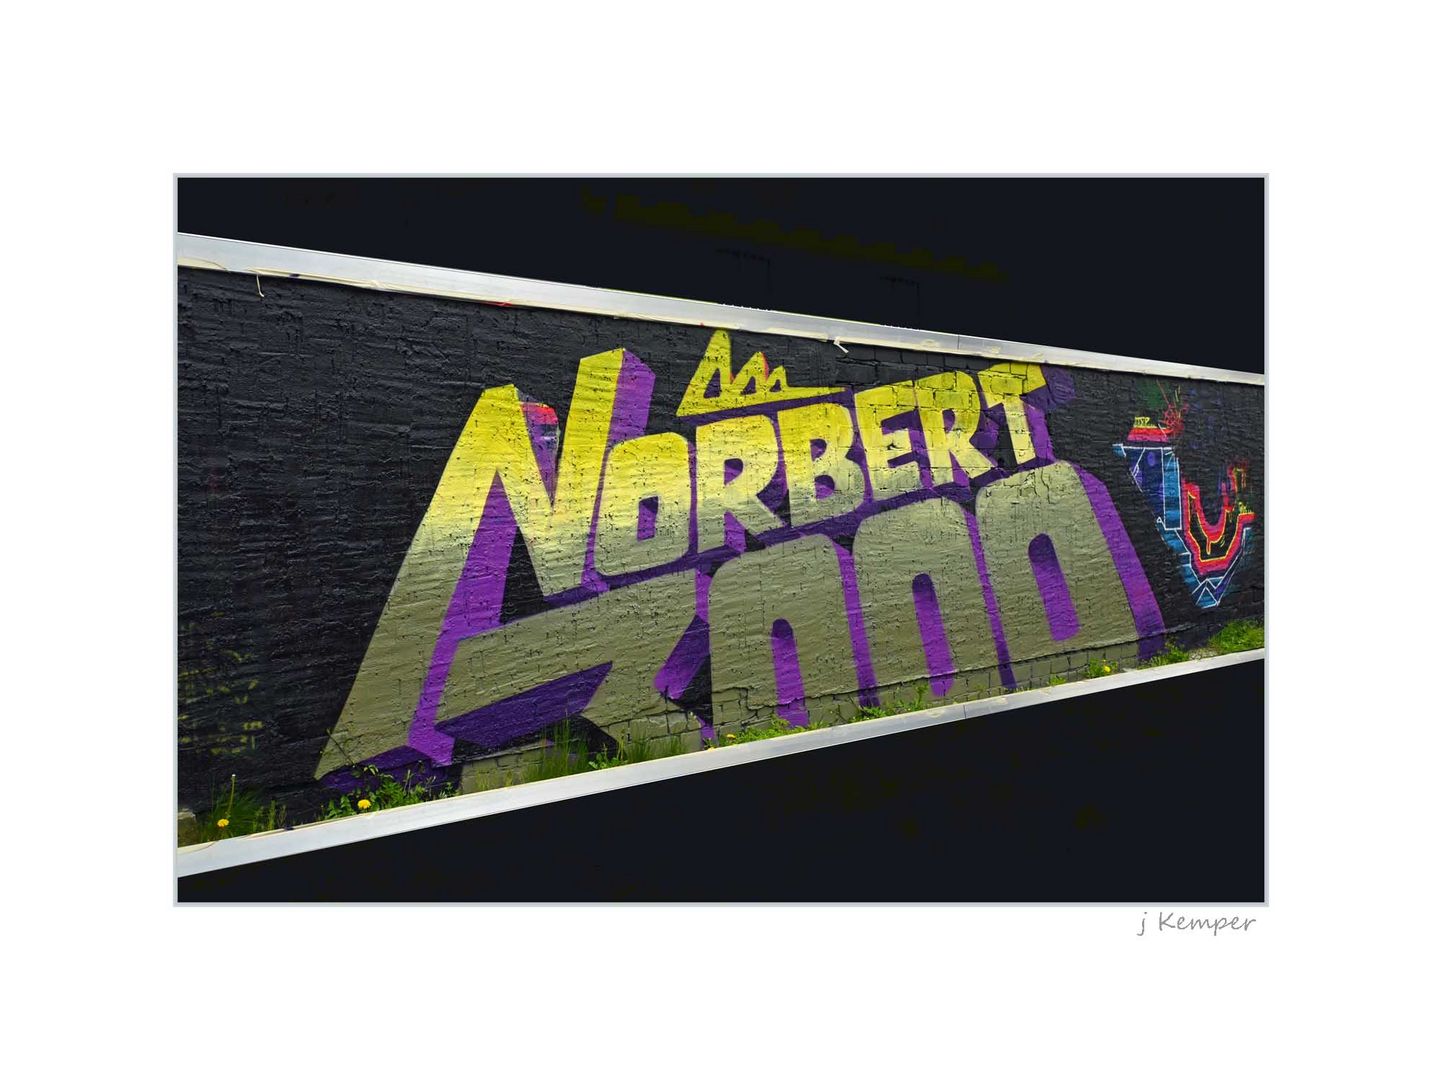 - Norbert 3000 -